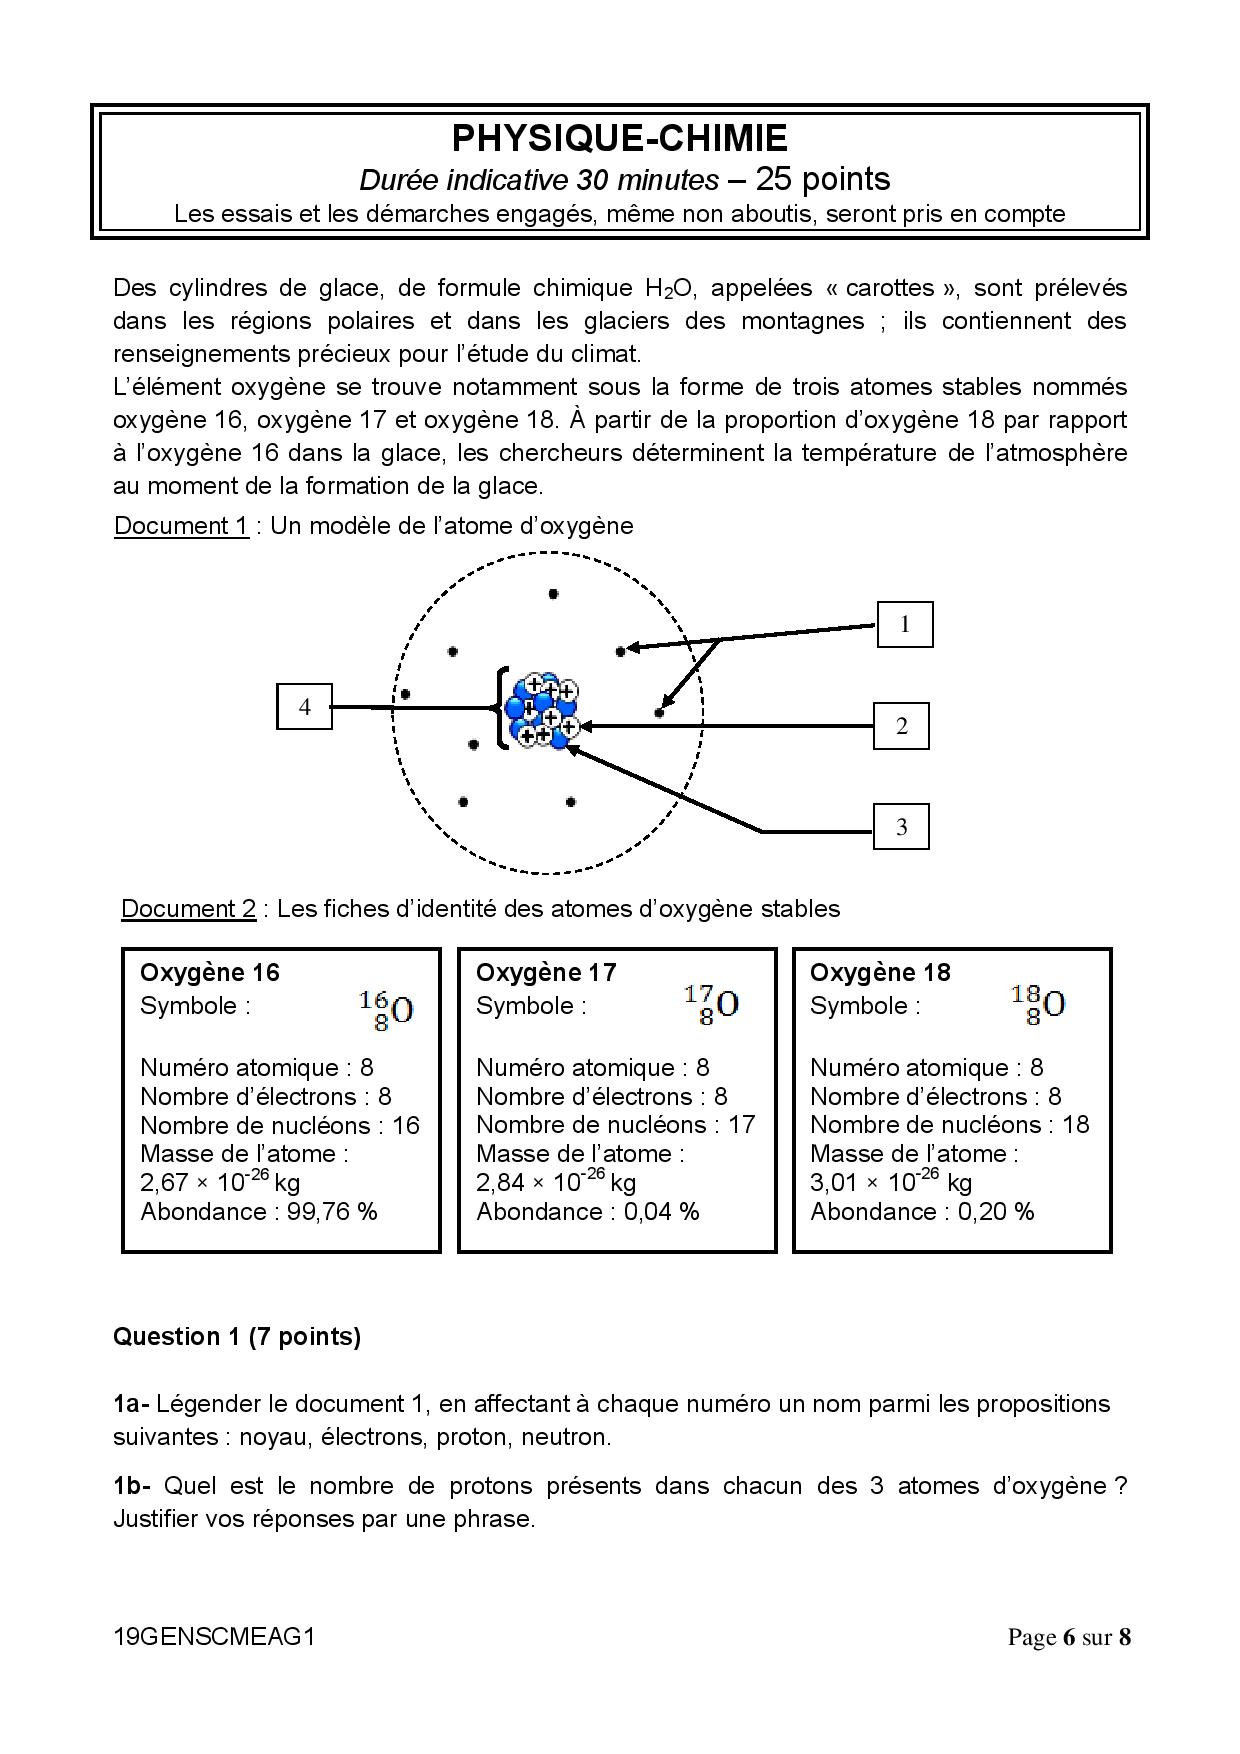 Sujet De Brevet Maths Avec Corrigé Corrigé brevet 2019 physique chimie - Atomes d'oxygène